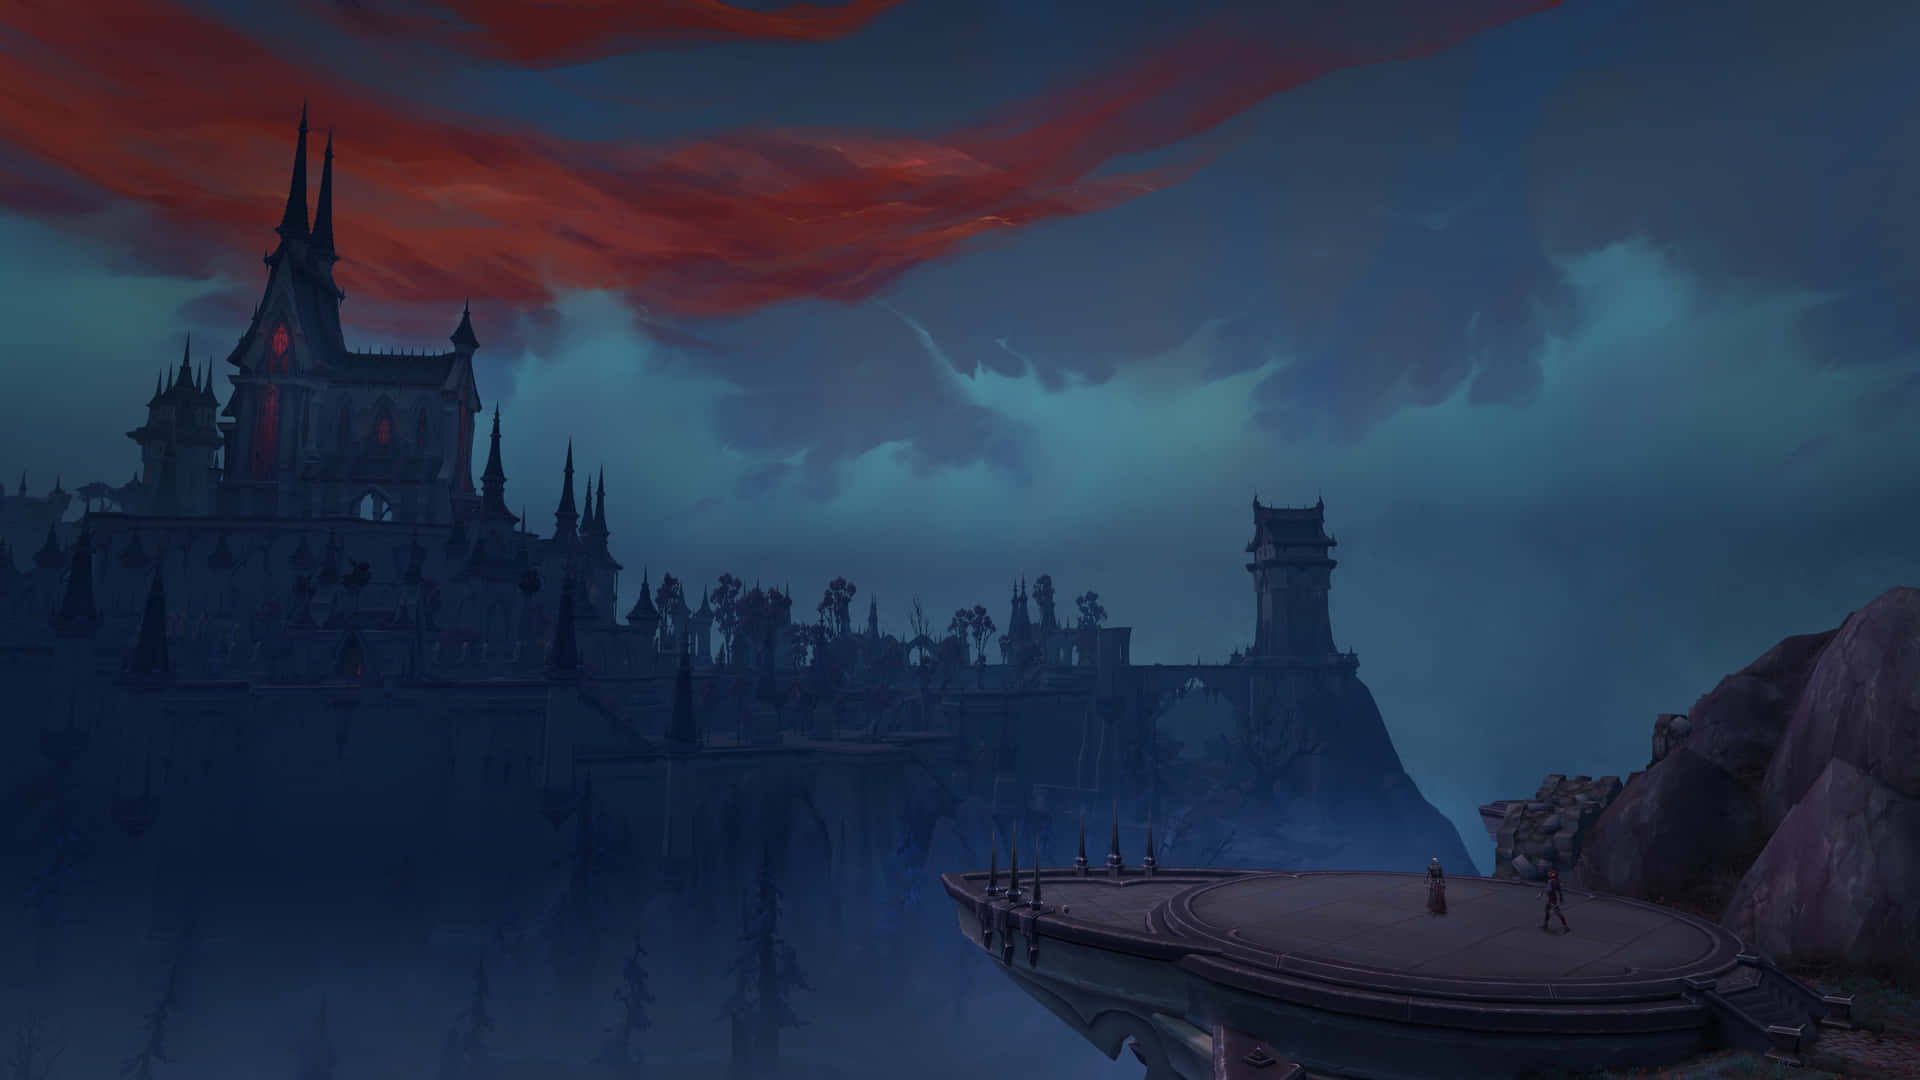 Entdeckedie Grenzenlosen Möglichkeiten Der Schattenlande In World Of Warcraft. Wallpaper